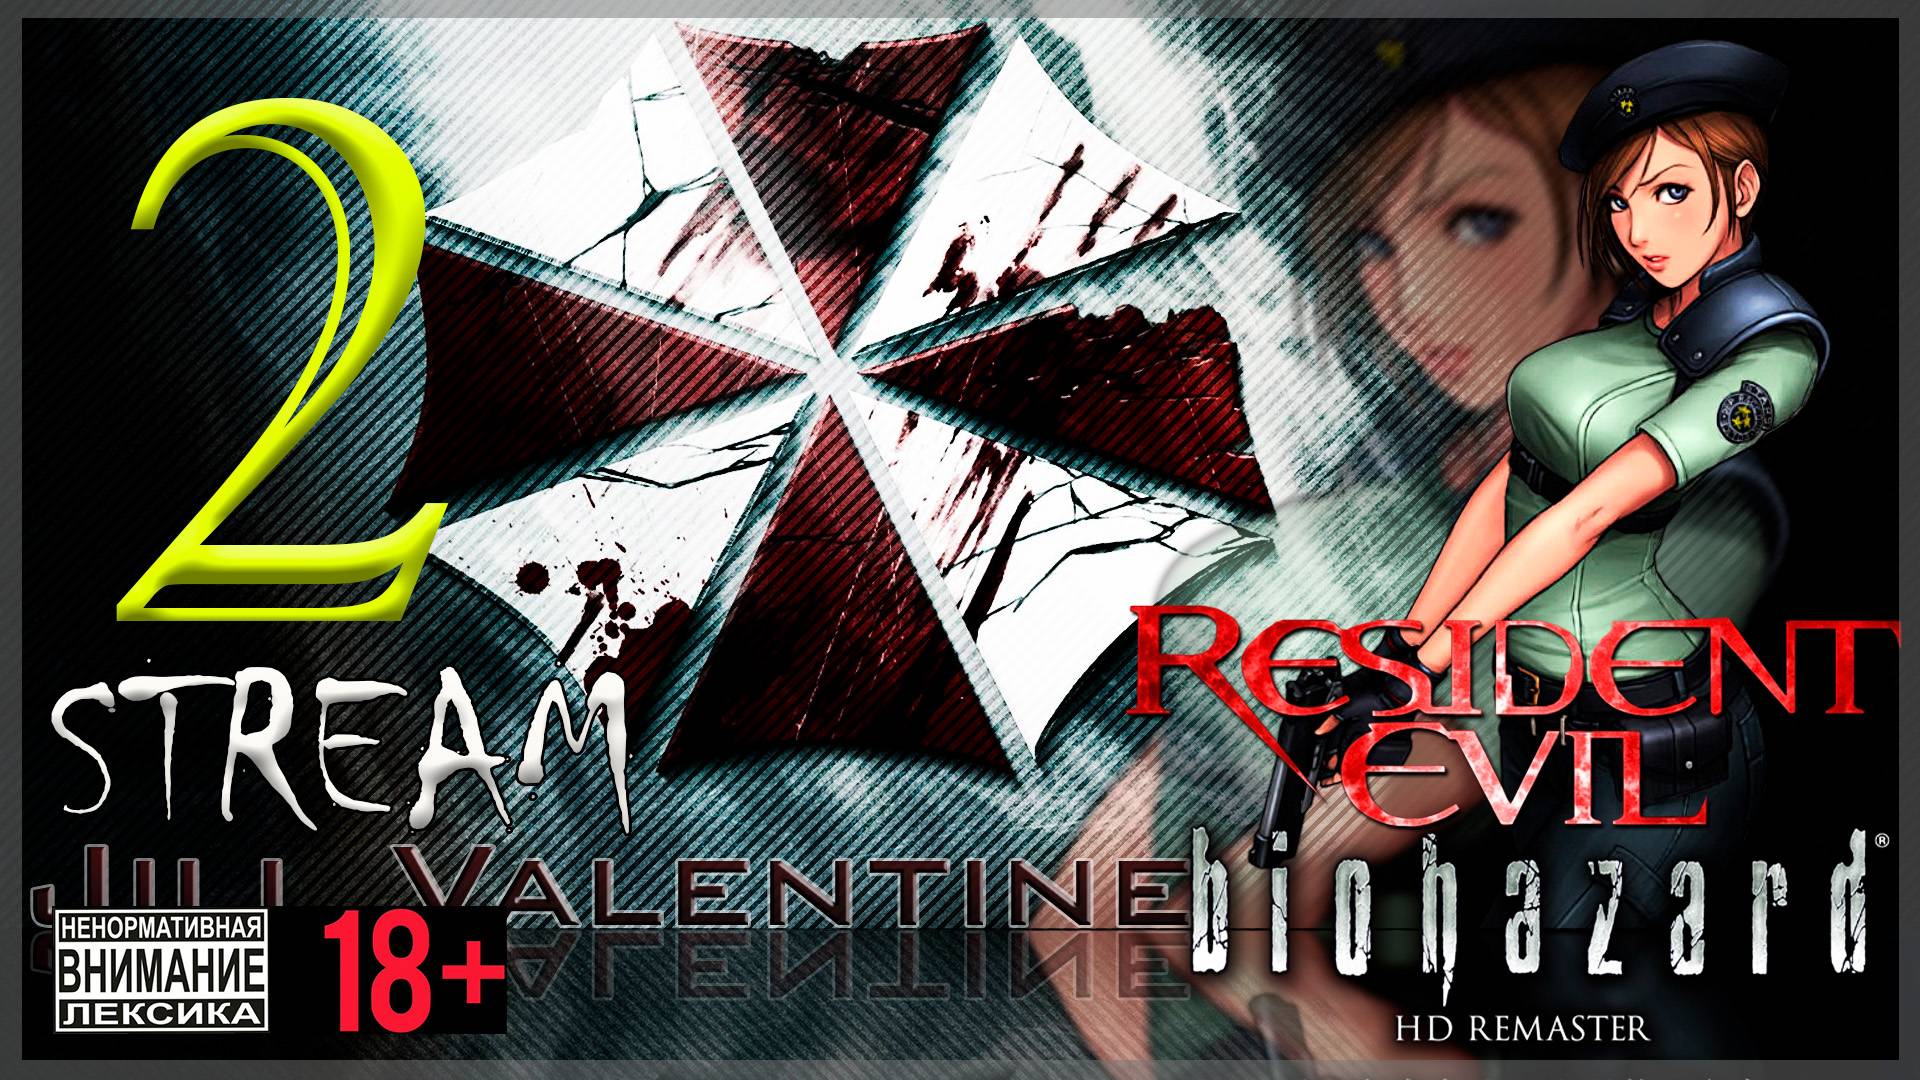 Первое прохождение Resident Evil - Biohazard HD REMASTER #2 Джилл